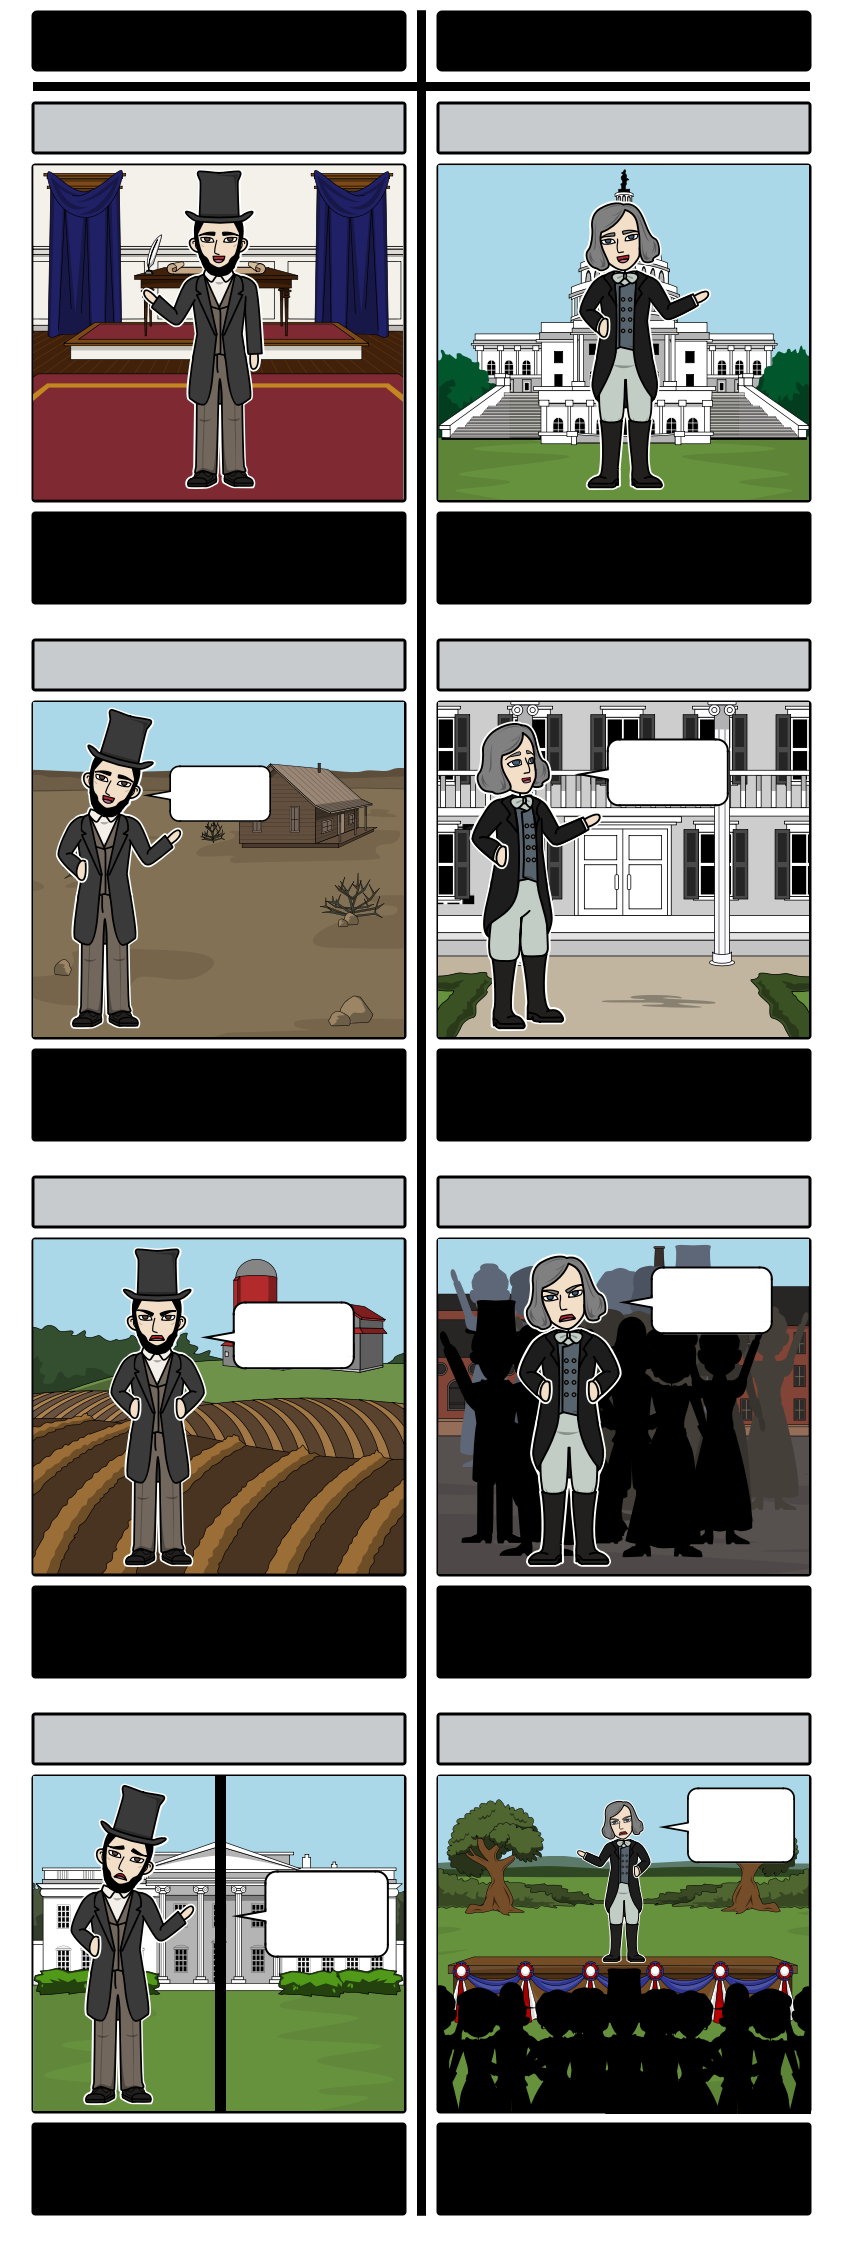 1850 के दशक में अमेरिका - लिंकन 1854 में / डगलस समितीय बहस